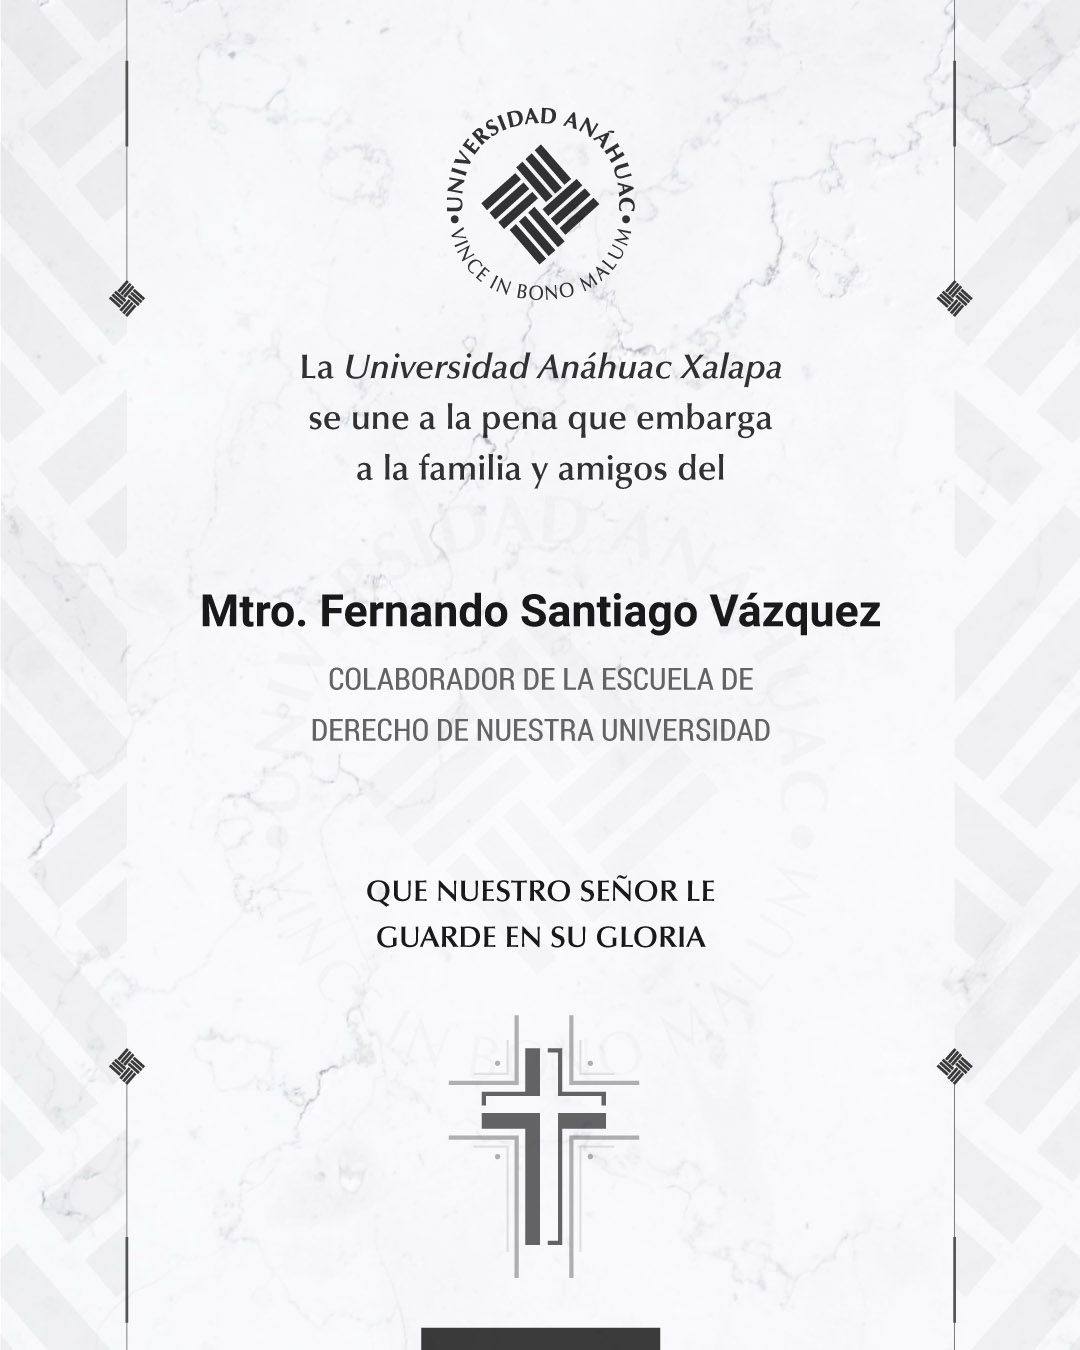 3 / 18 - Mtro. Fernando Santiago Vázquez